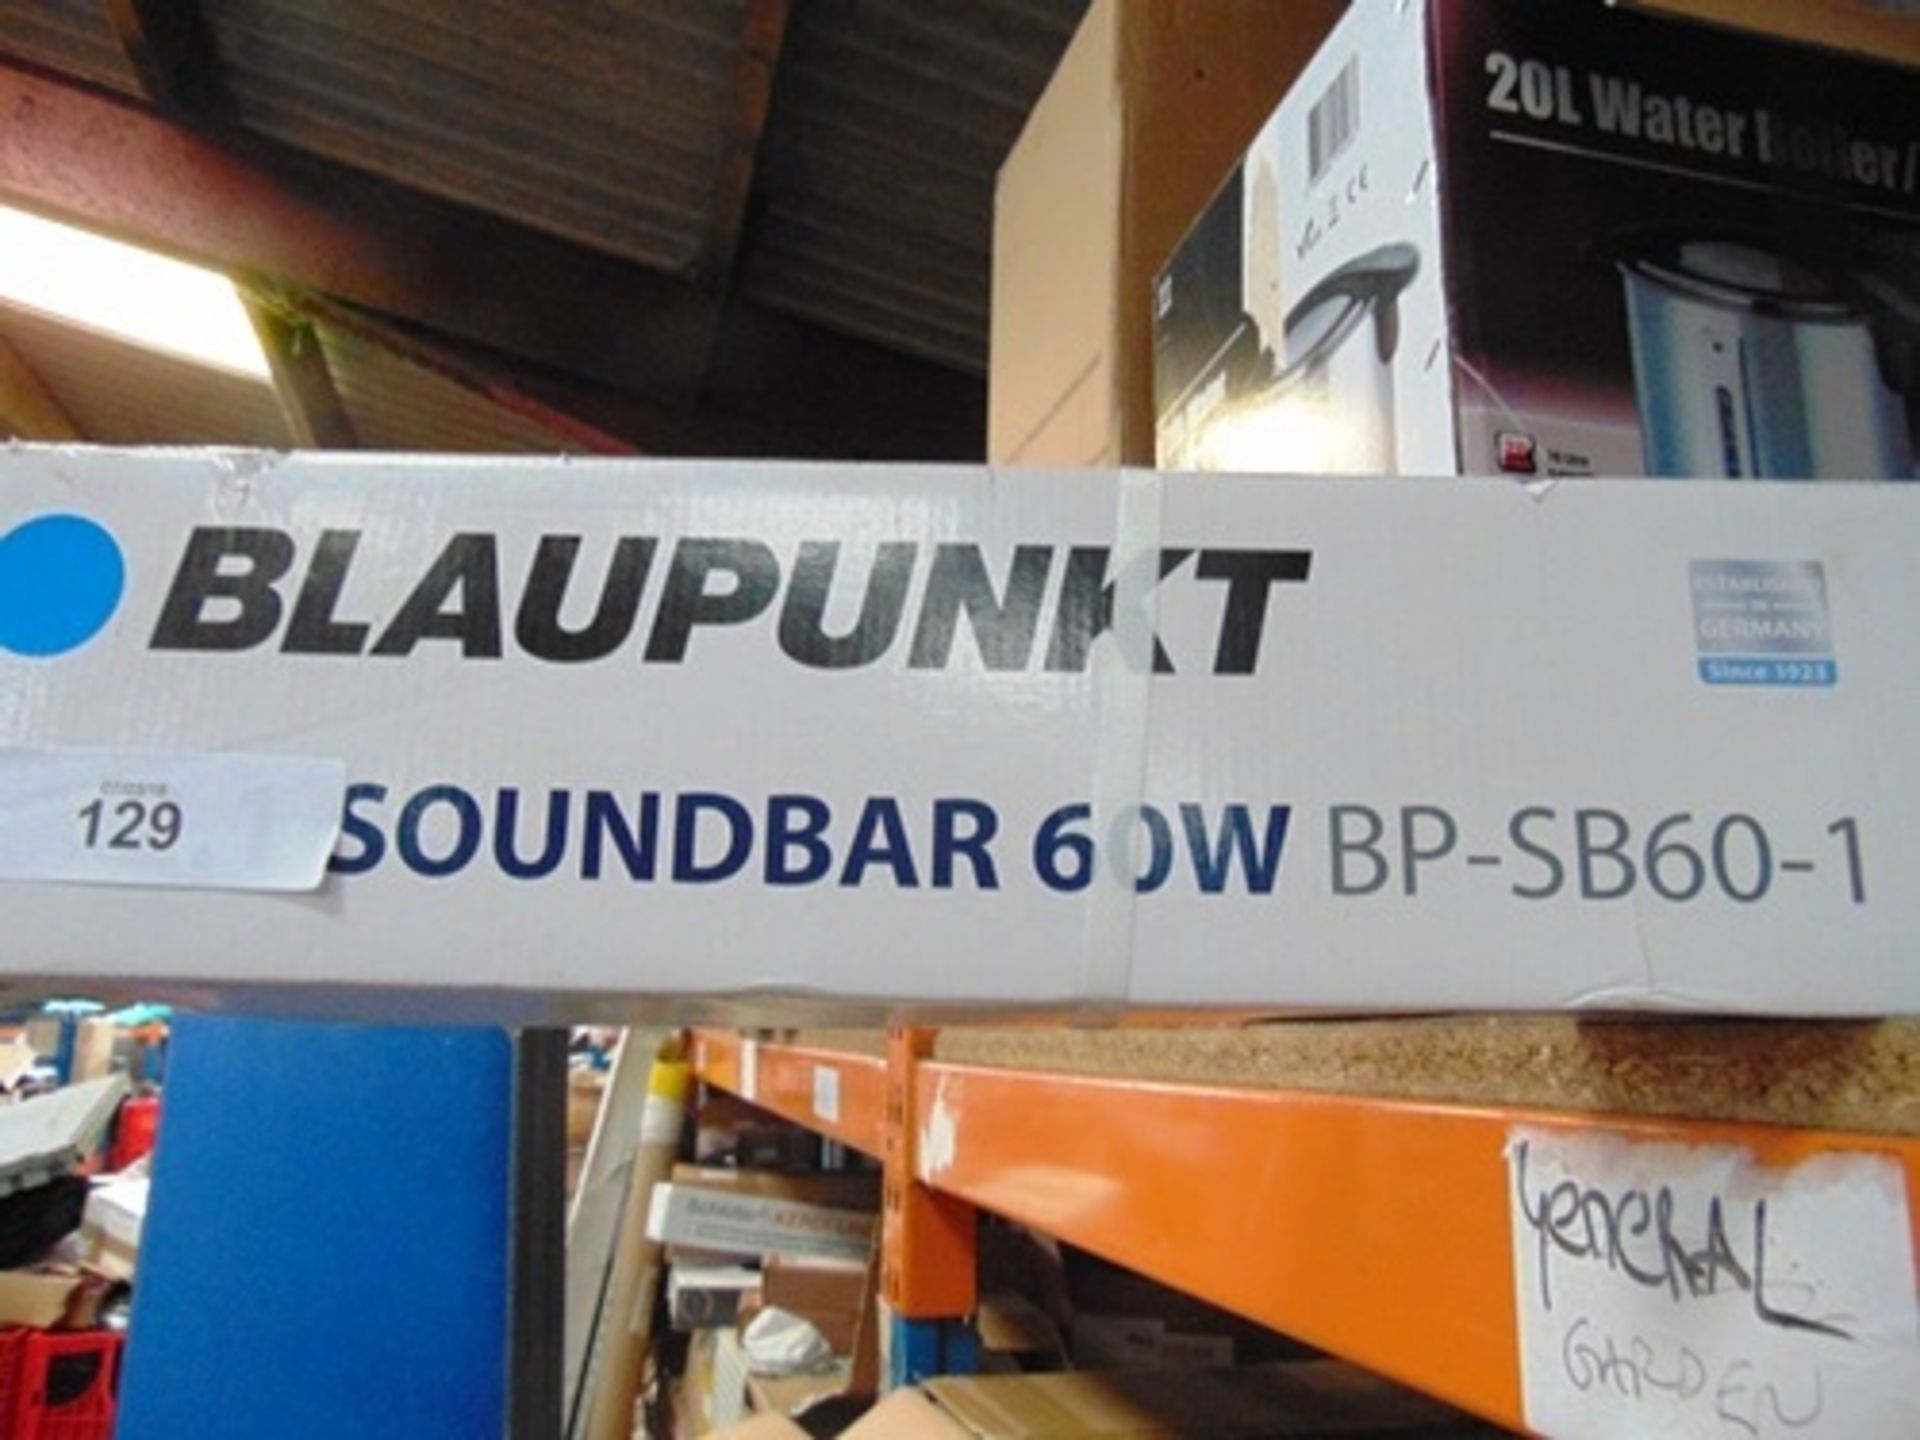 1 x Blaupunkt 2.1 soundbar, 60W, model BP-SB60-1 - New in box(B30) - Image 2 of 2